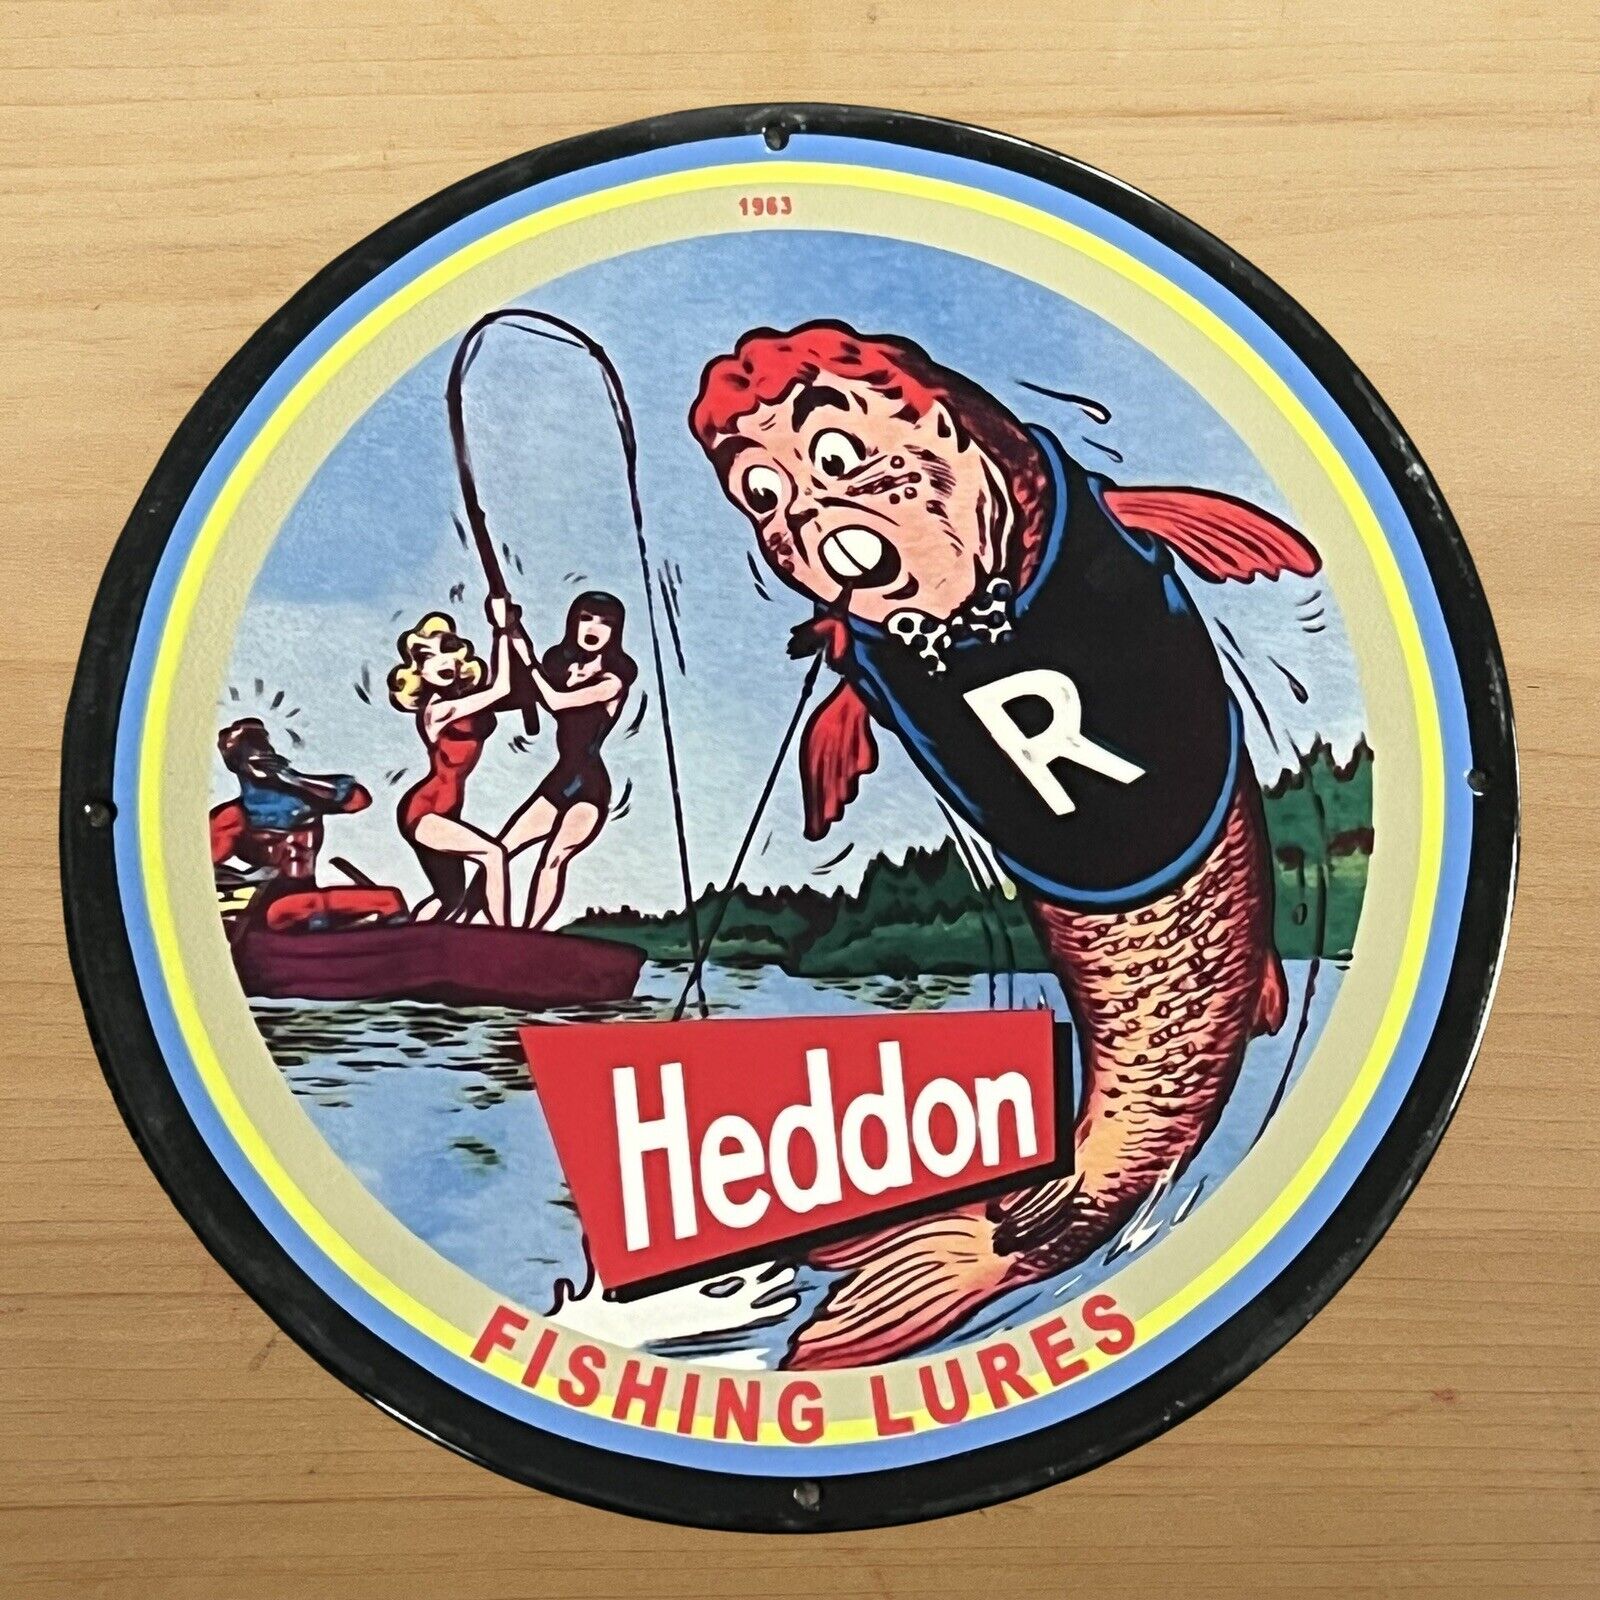 VINTAGE HEDDON PORCELAIN SIGN FISHING LURES SALES SERVICE STATION PUMP PLATE AD